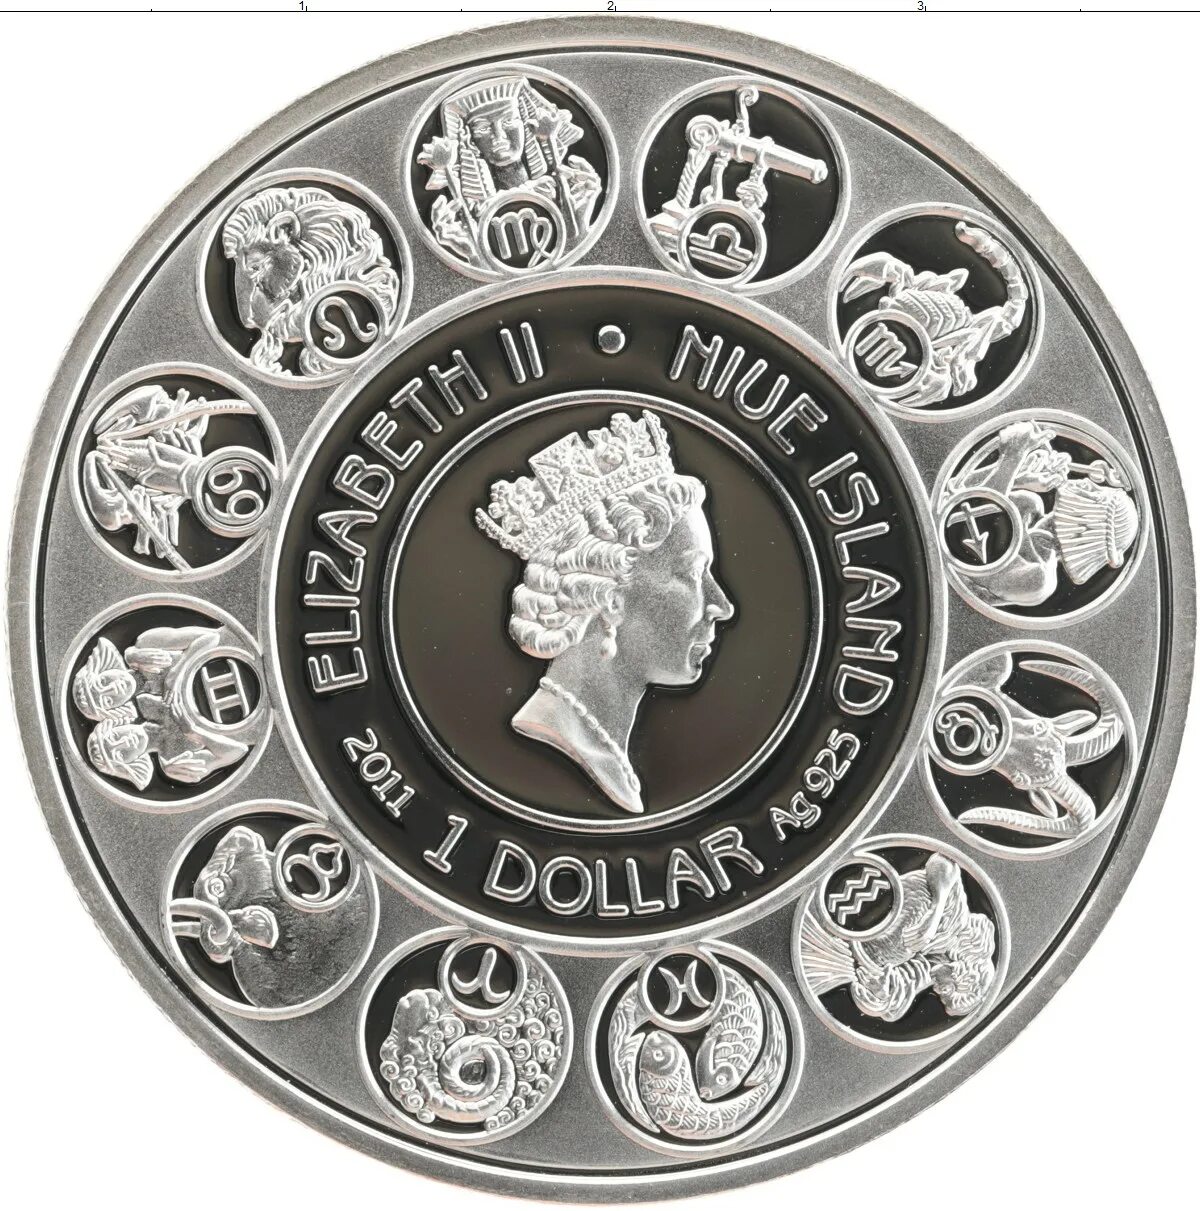 Ниуэ 1 доллар, 2010 знаки зодиака - Водолей. Монеты Дева серебро Ниуэ. Монеты Ниуэ знаки зодиака. Монета Ниуэ 2010 1 доллар серебро. Монета знак зодиака купить